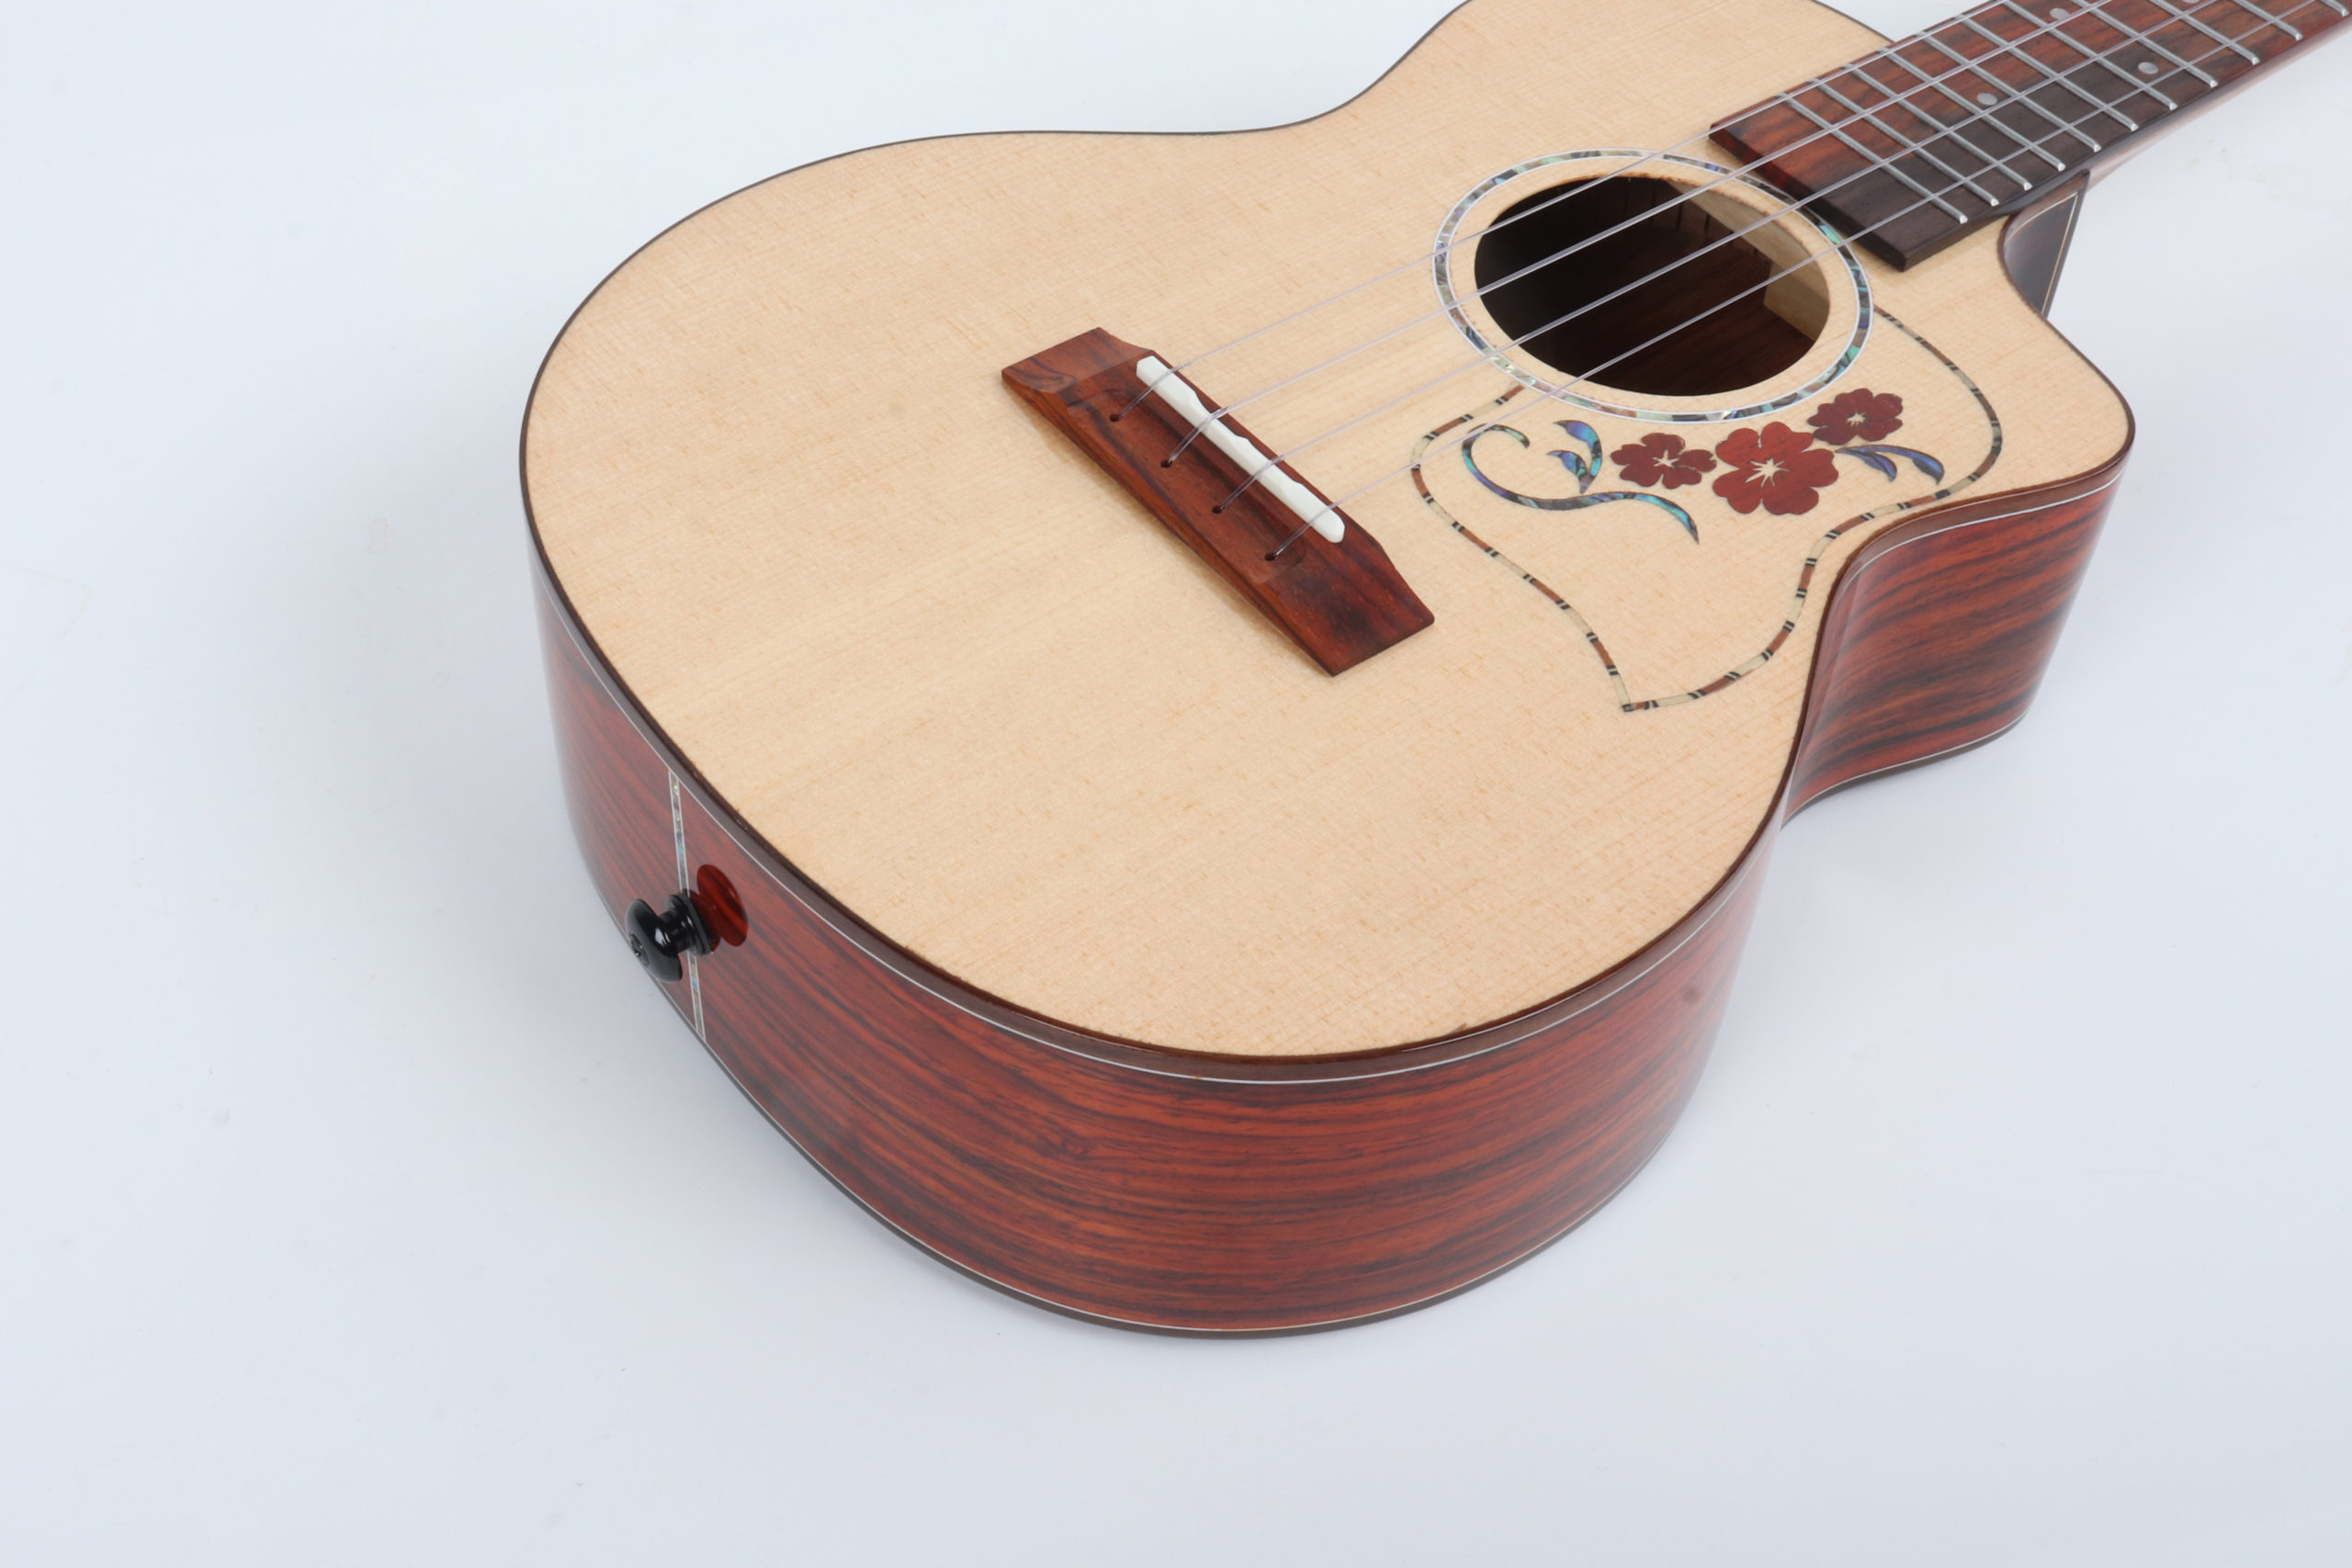 ocobolo wood ukulele cutaway 